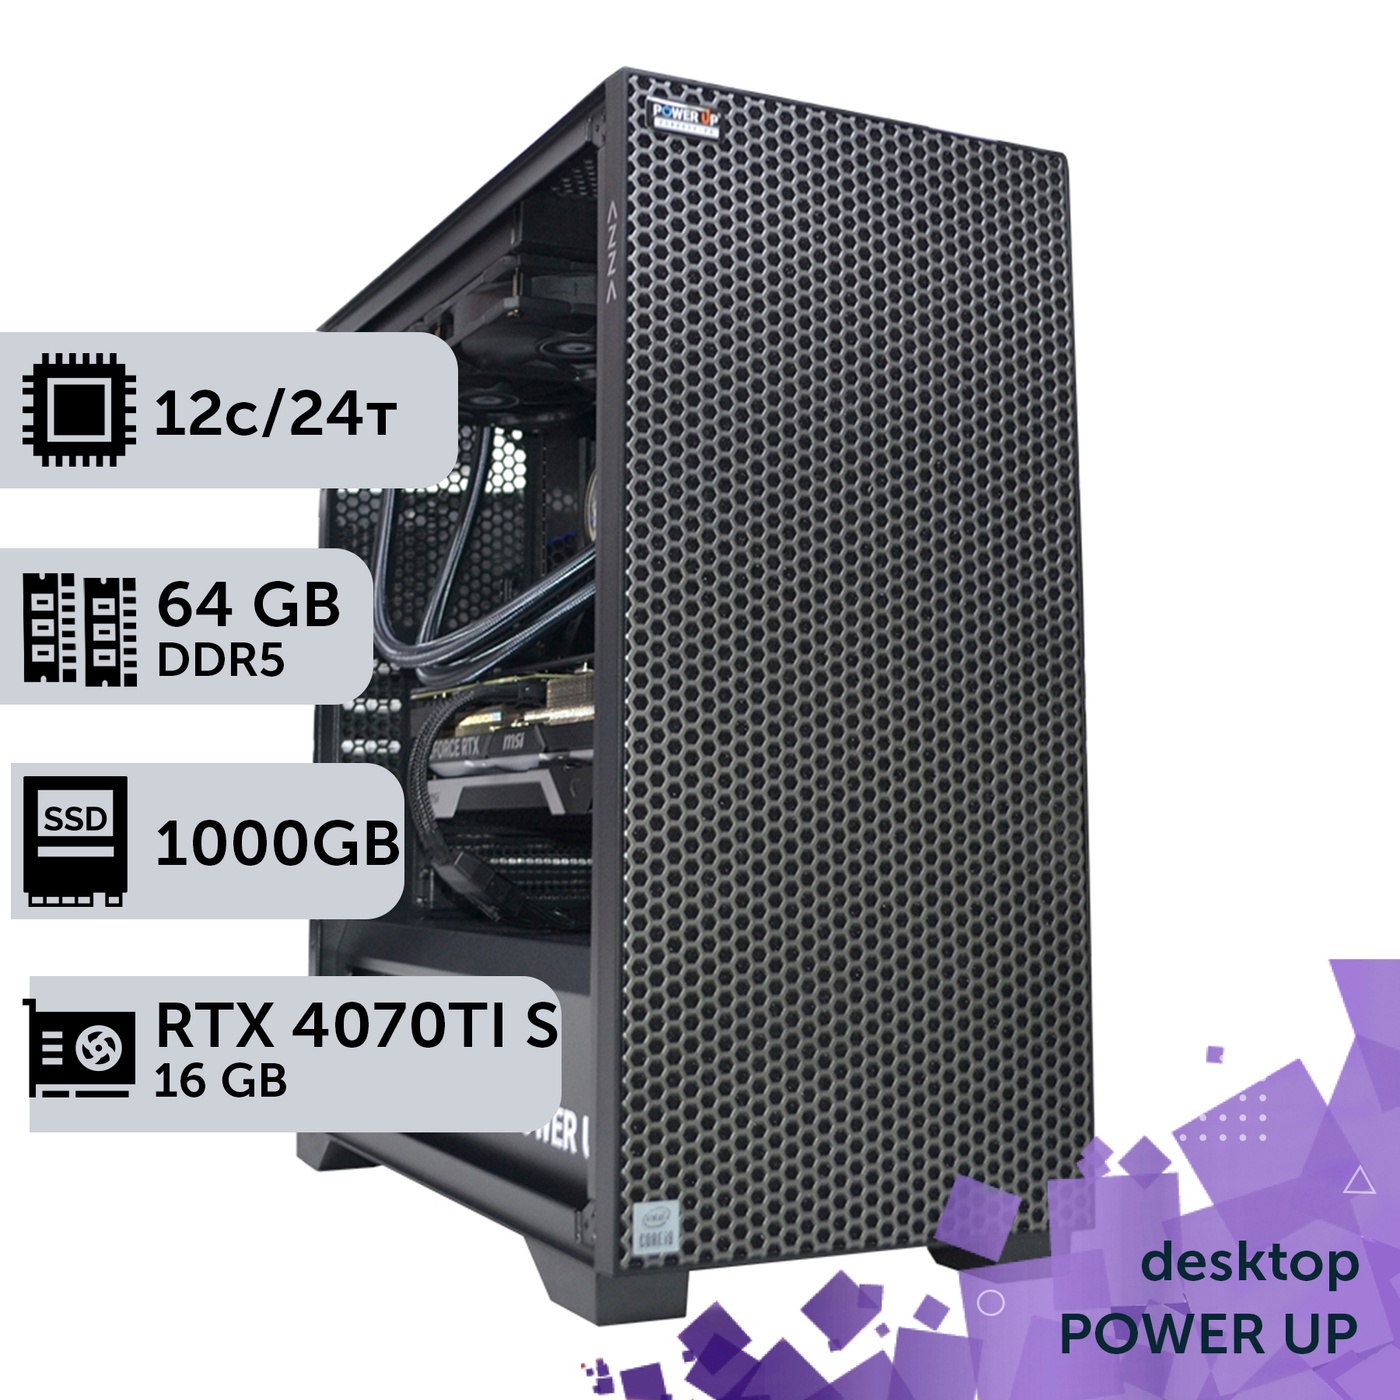 Робоча станція PowerUp Desktop #364 Ryzen 9 7900x/64 GB/SSD 1TB/GeForce RTX 4070Ti Super 16GB